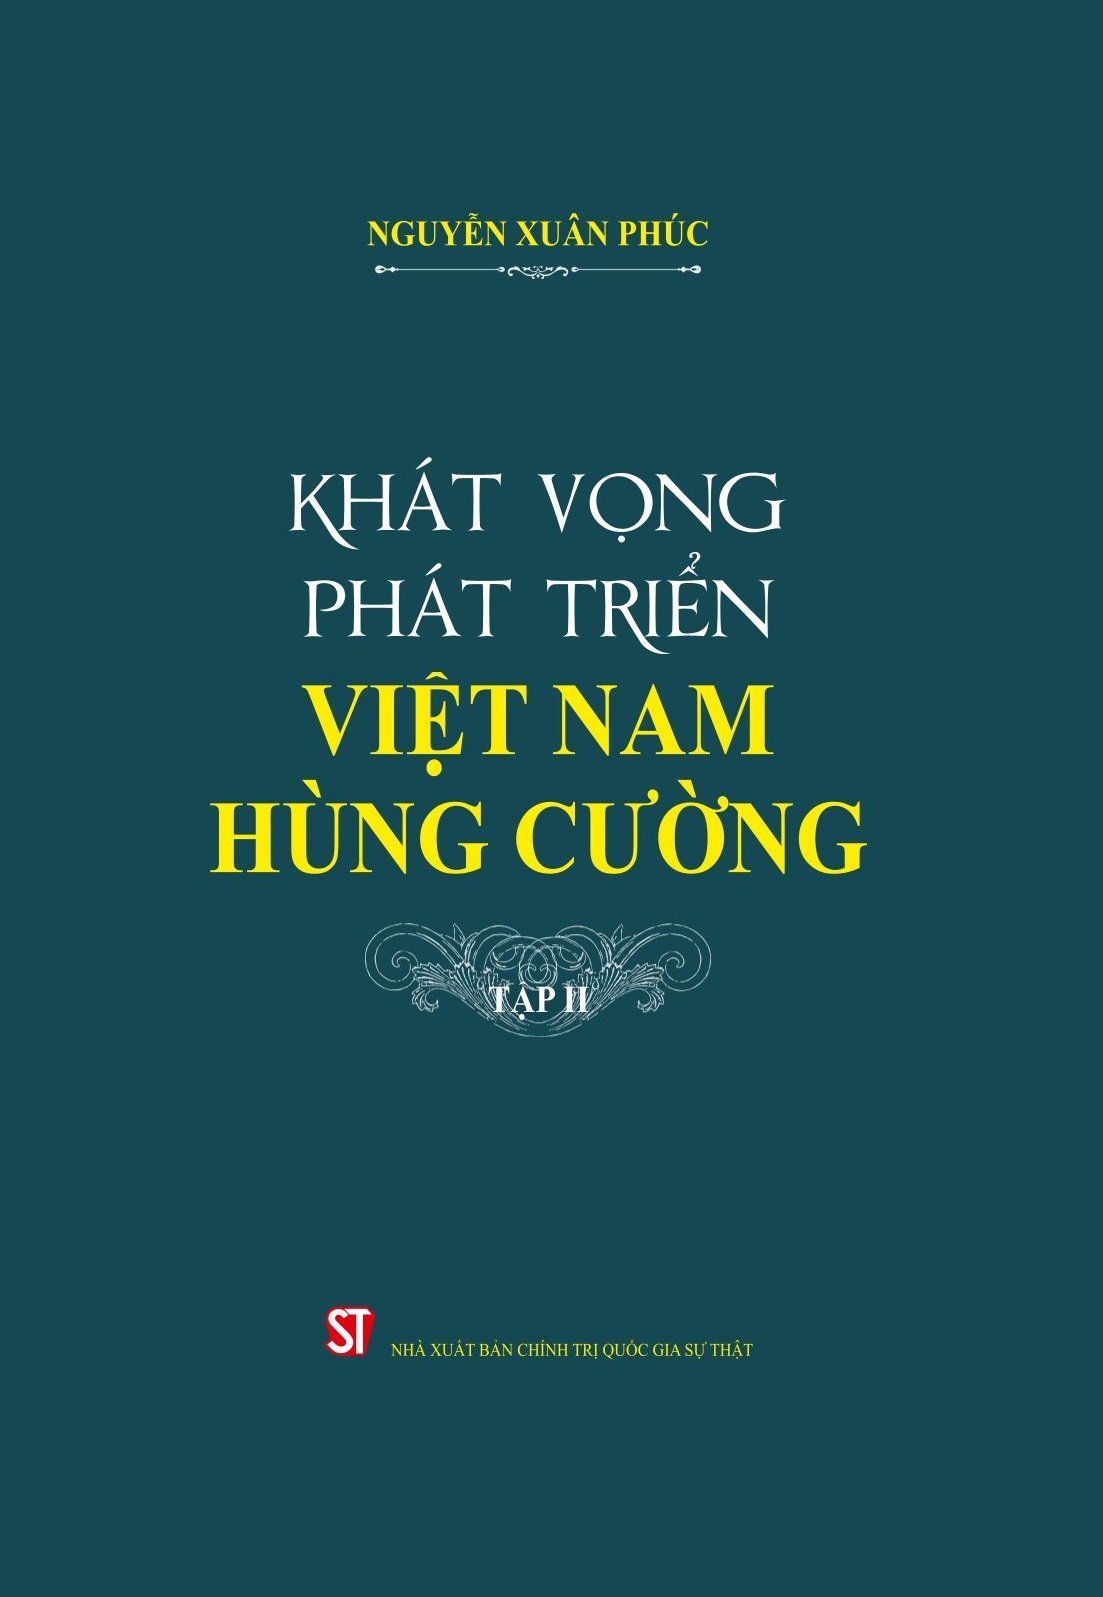 Khát vọng phát triển Việt Nam hùng cường (Tập II)